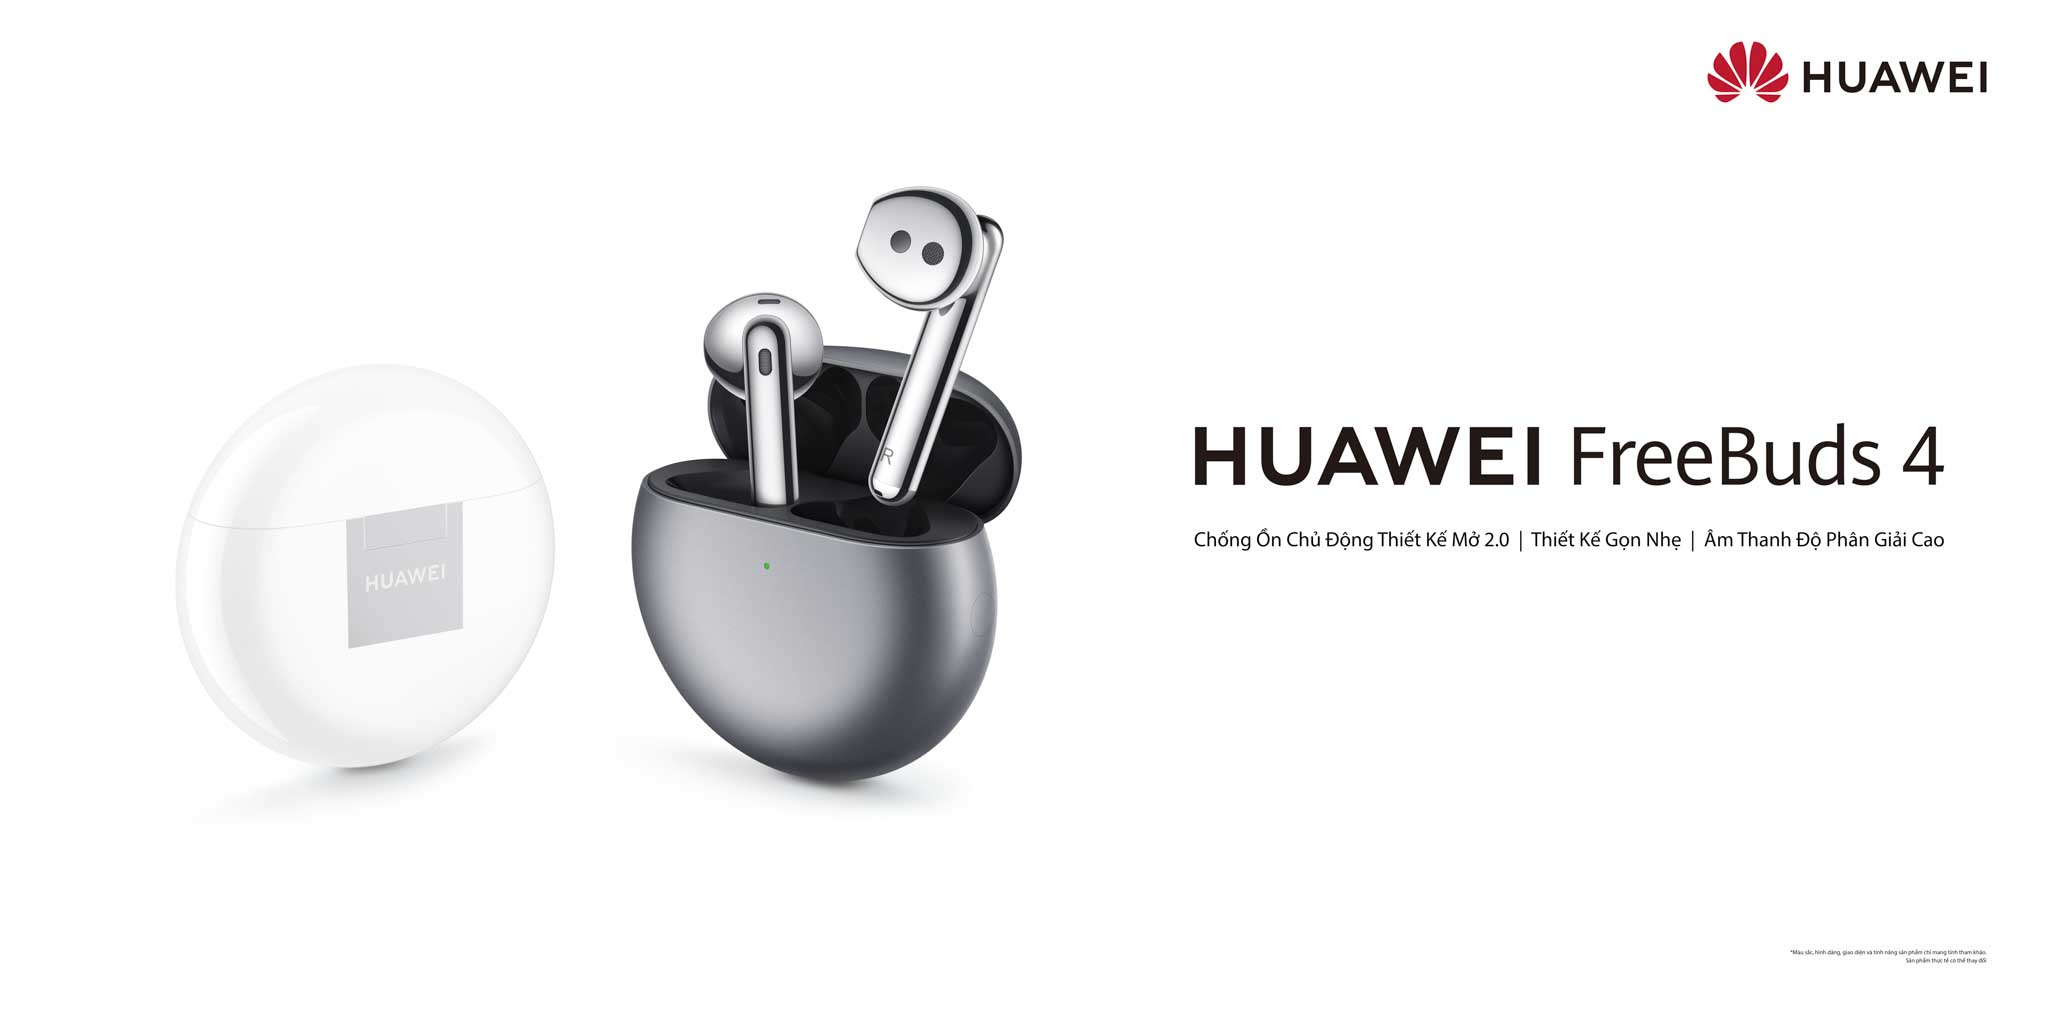 Huawei ra mắt tai nghe FreeBuds 4 tại Việt Nam: Nâng tầm Chống ồn chủ động thiết kế mở mới, kết nối đa thiết bị